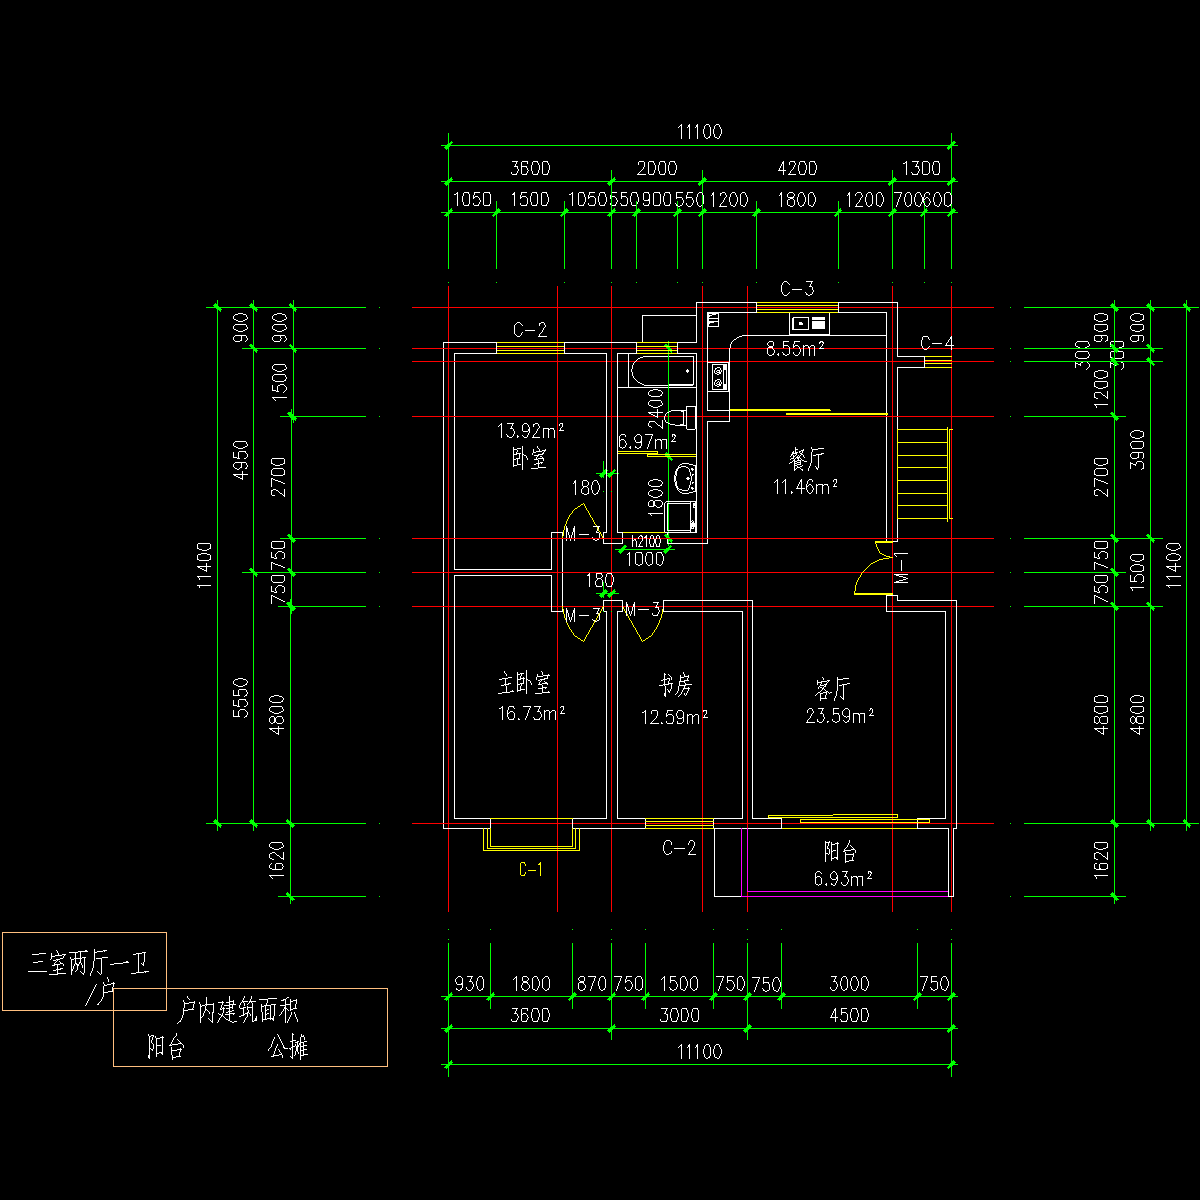 板式多层单户三室二厅一卫户型CAD图纸(126)